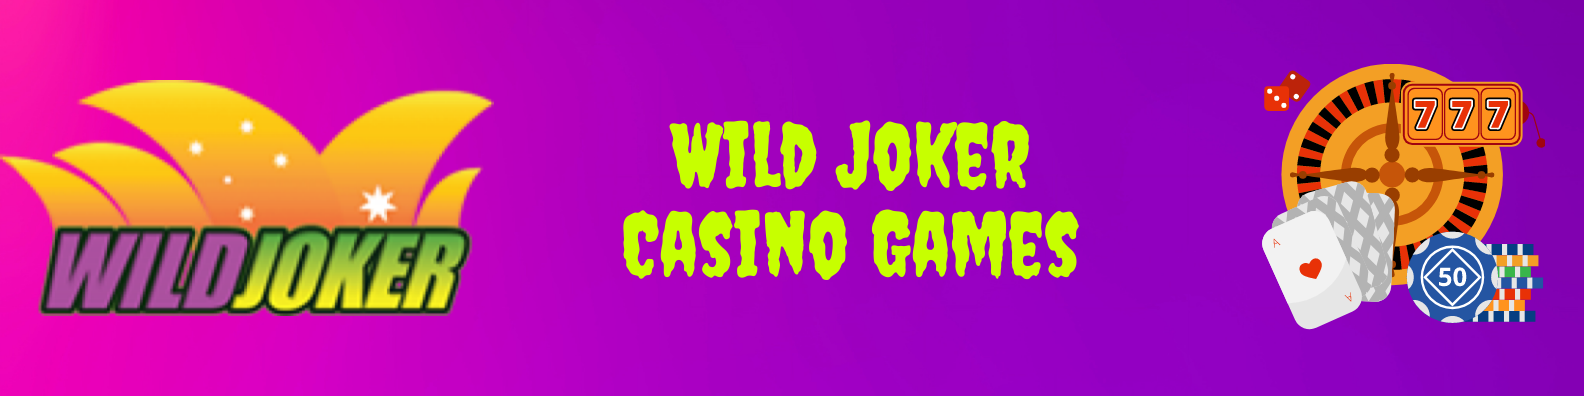 Wild Joker Casino Games